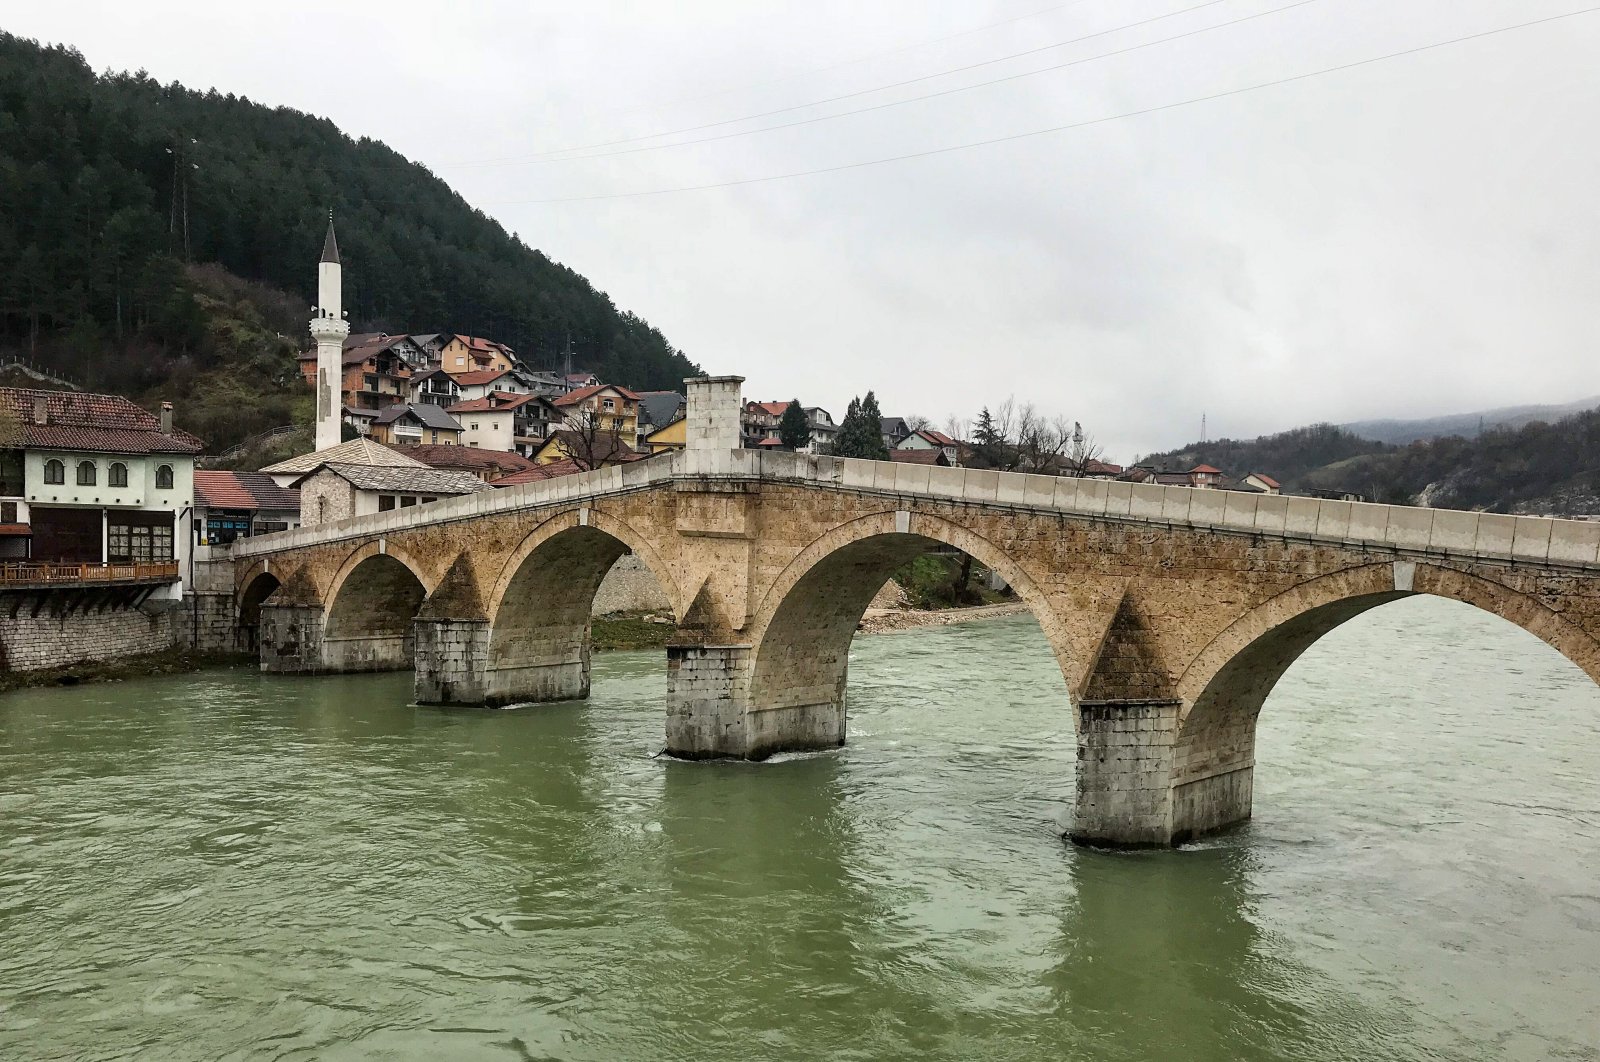 The Stara Cuprija Bridge, in Konjic, Bosnia-Herzegovina. (Photo by Özge Şengelen)